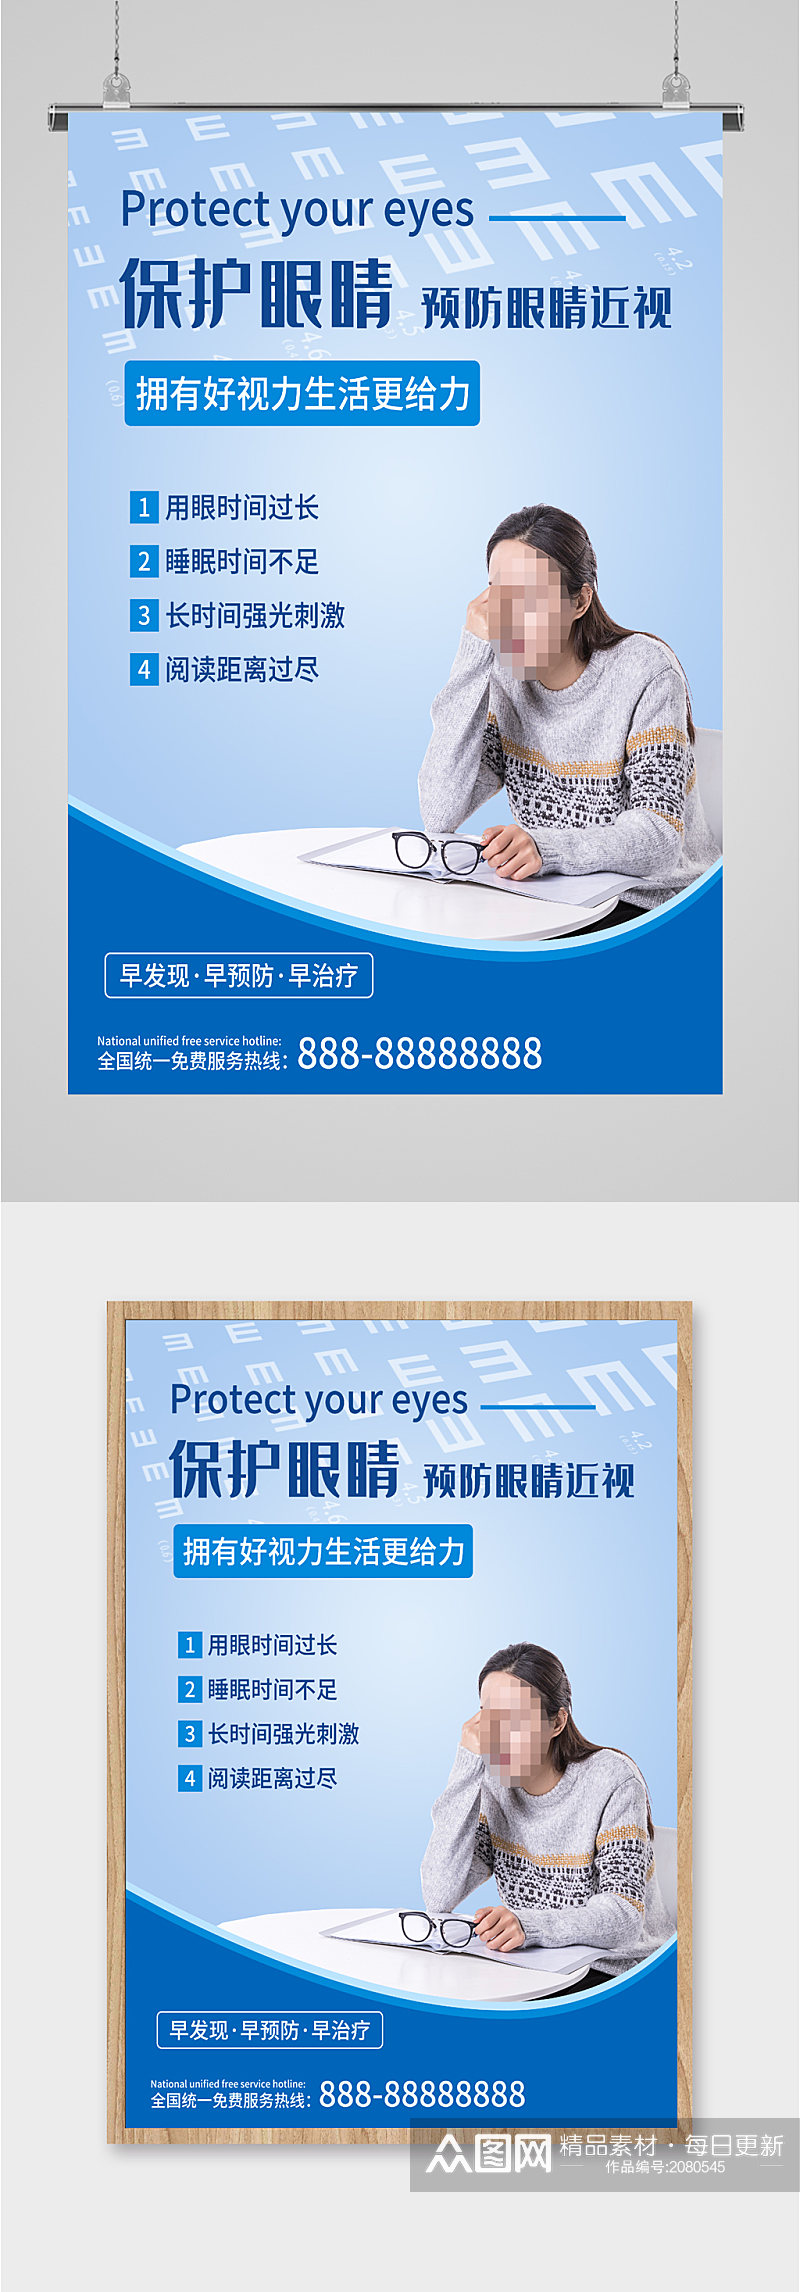 爱护眼睛保护视力海报素材